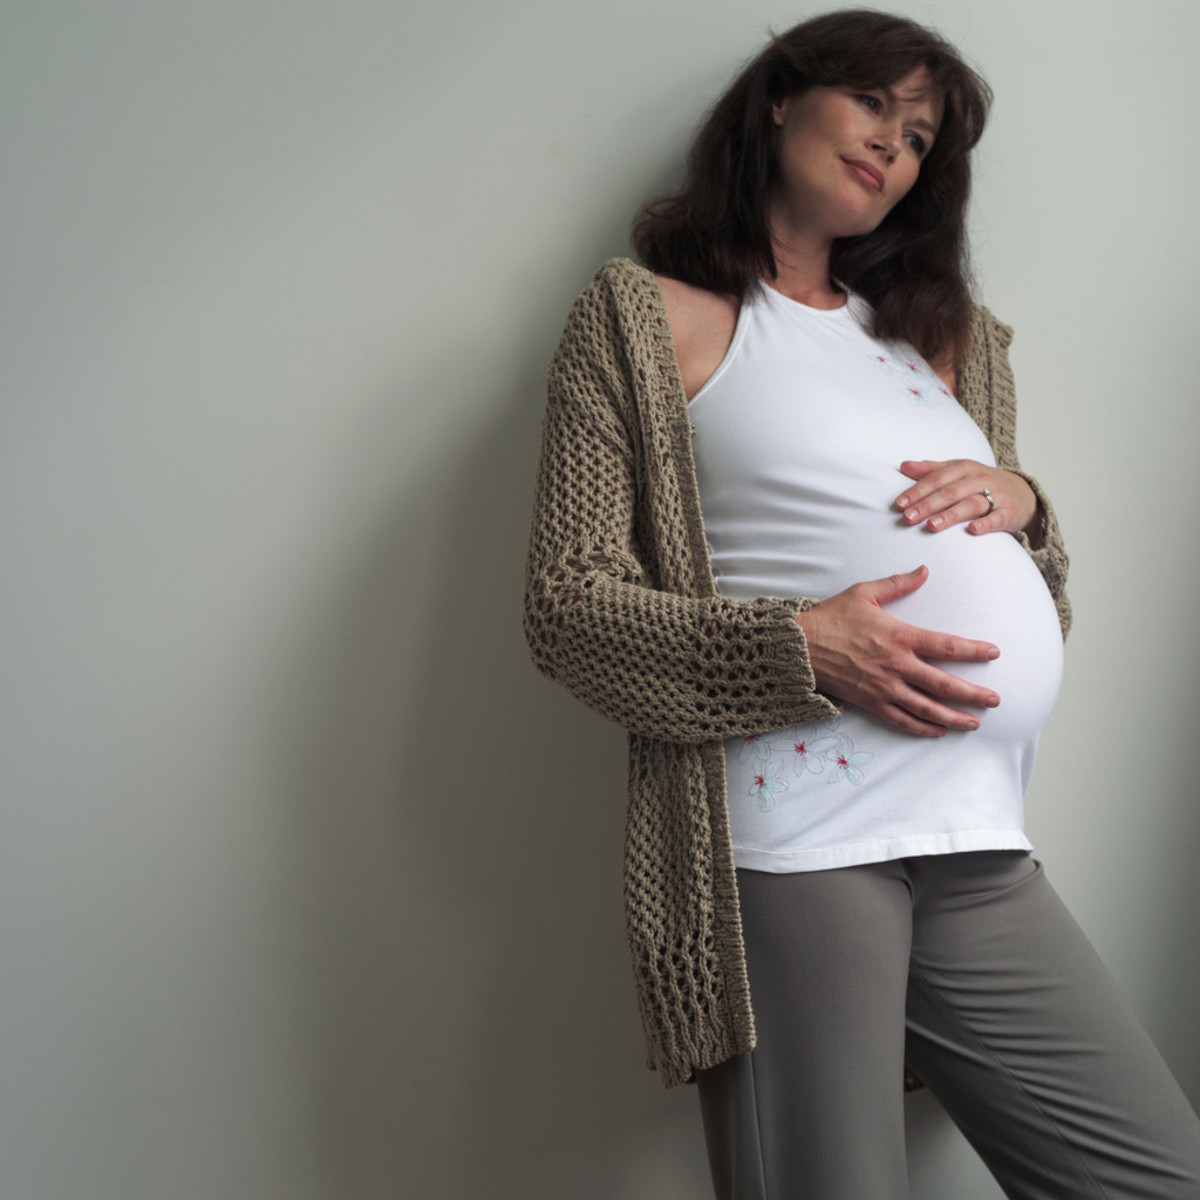 Παγκόσμιο φαινόμενο η γέννα από νεφροπαθή στην Κρήτη